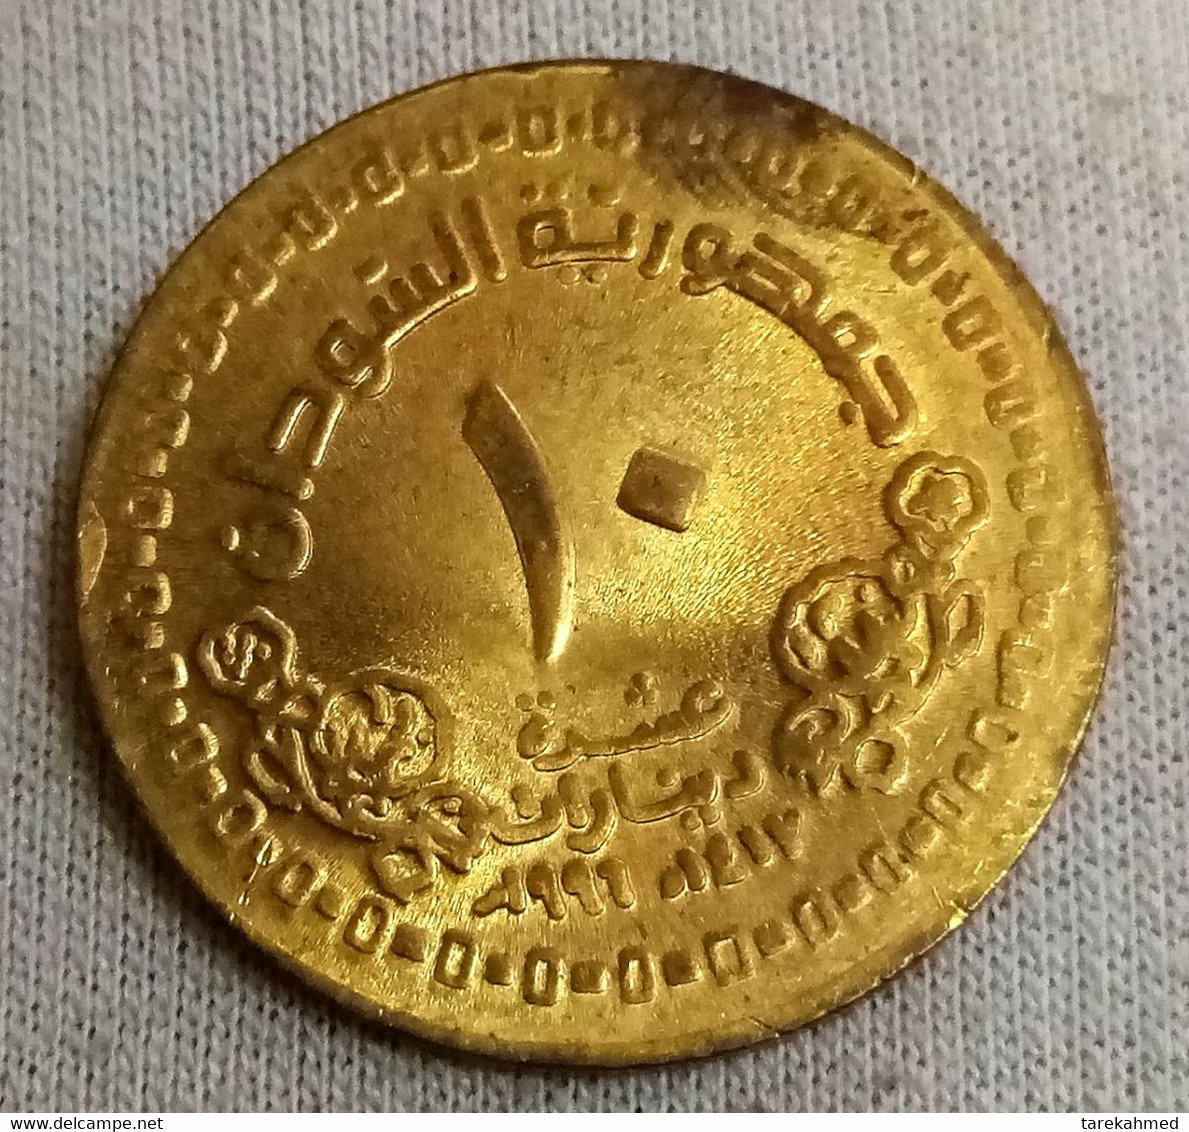 Sudan , 10 Dinars , 1996 / 1417 , KM 116 , Gomma - Soudan